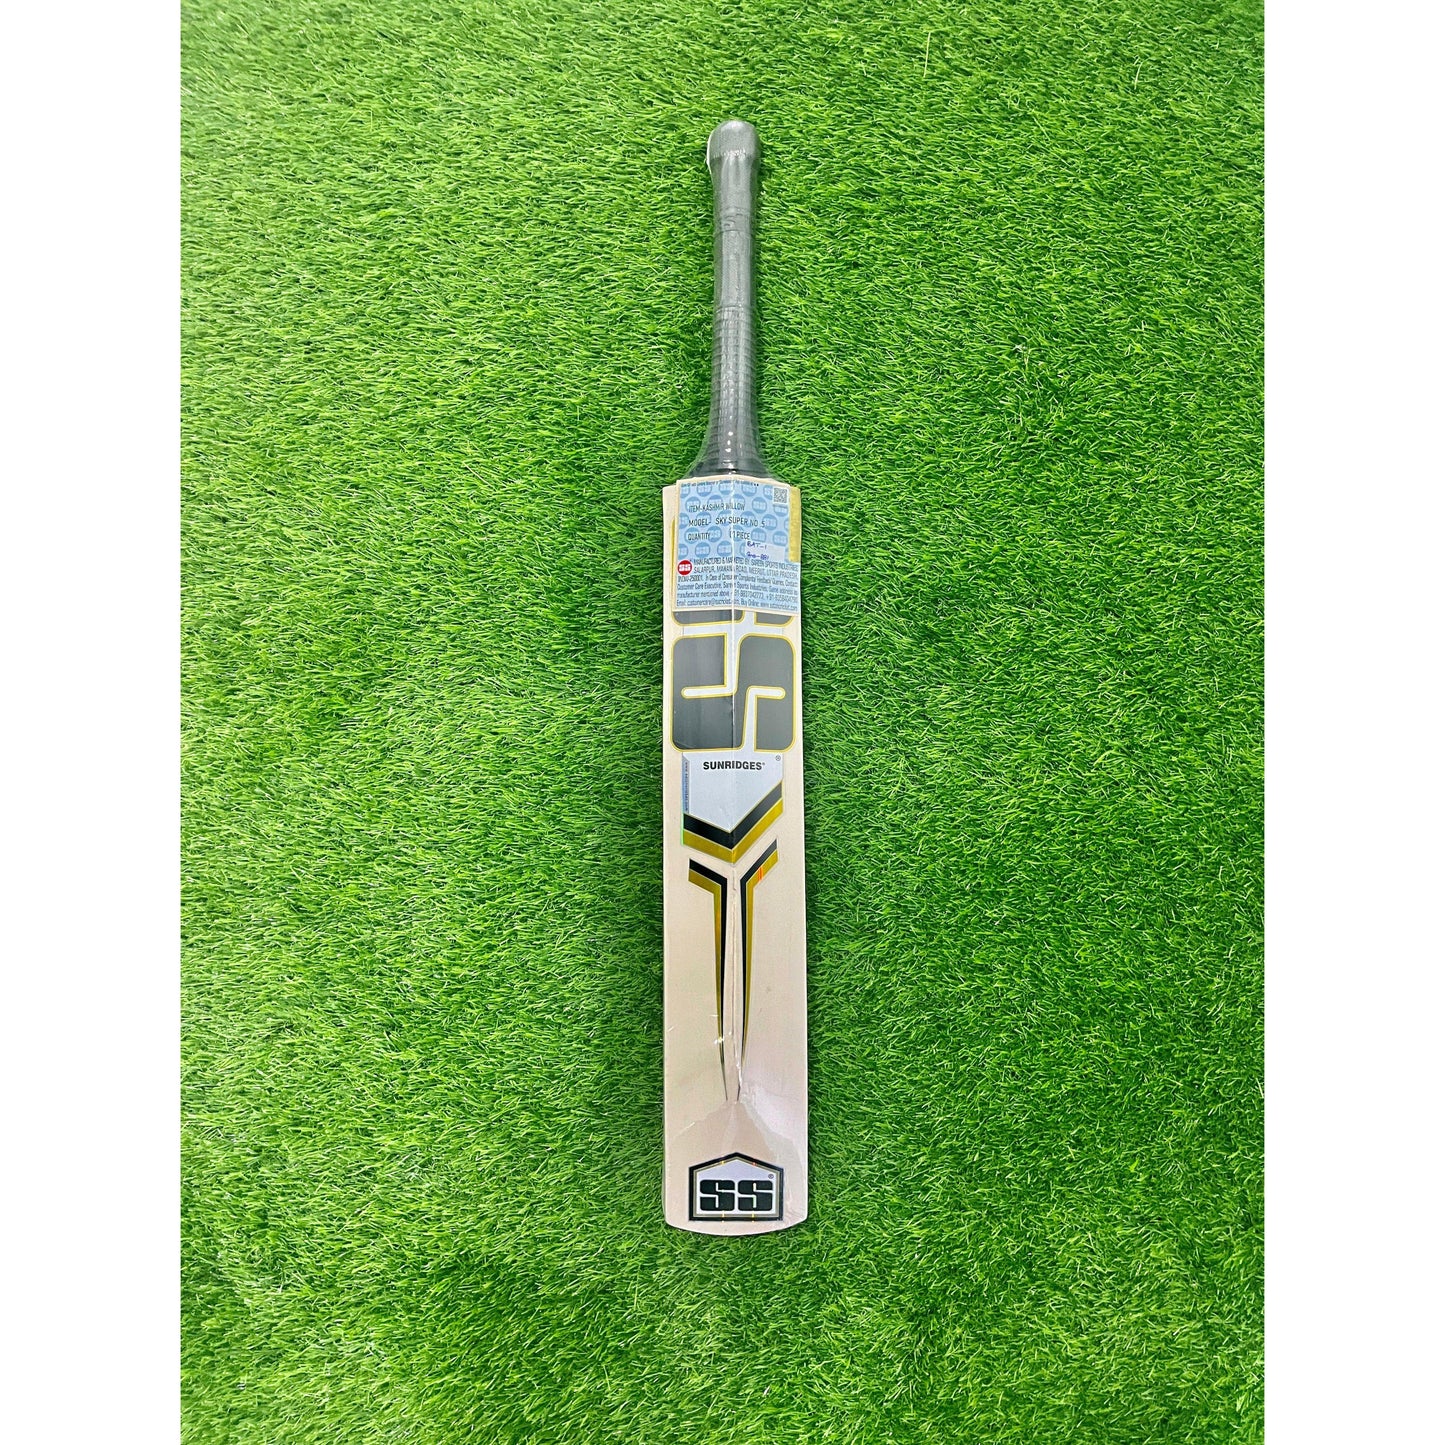 SS SKY Super Kashmir Willow Cricket Bat - Junior Size 1 (One)